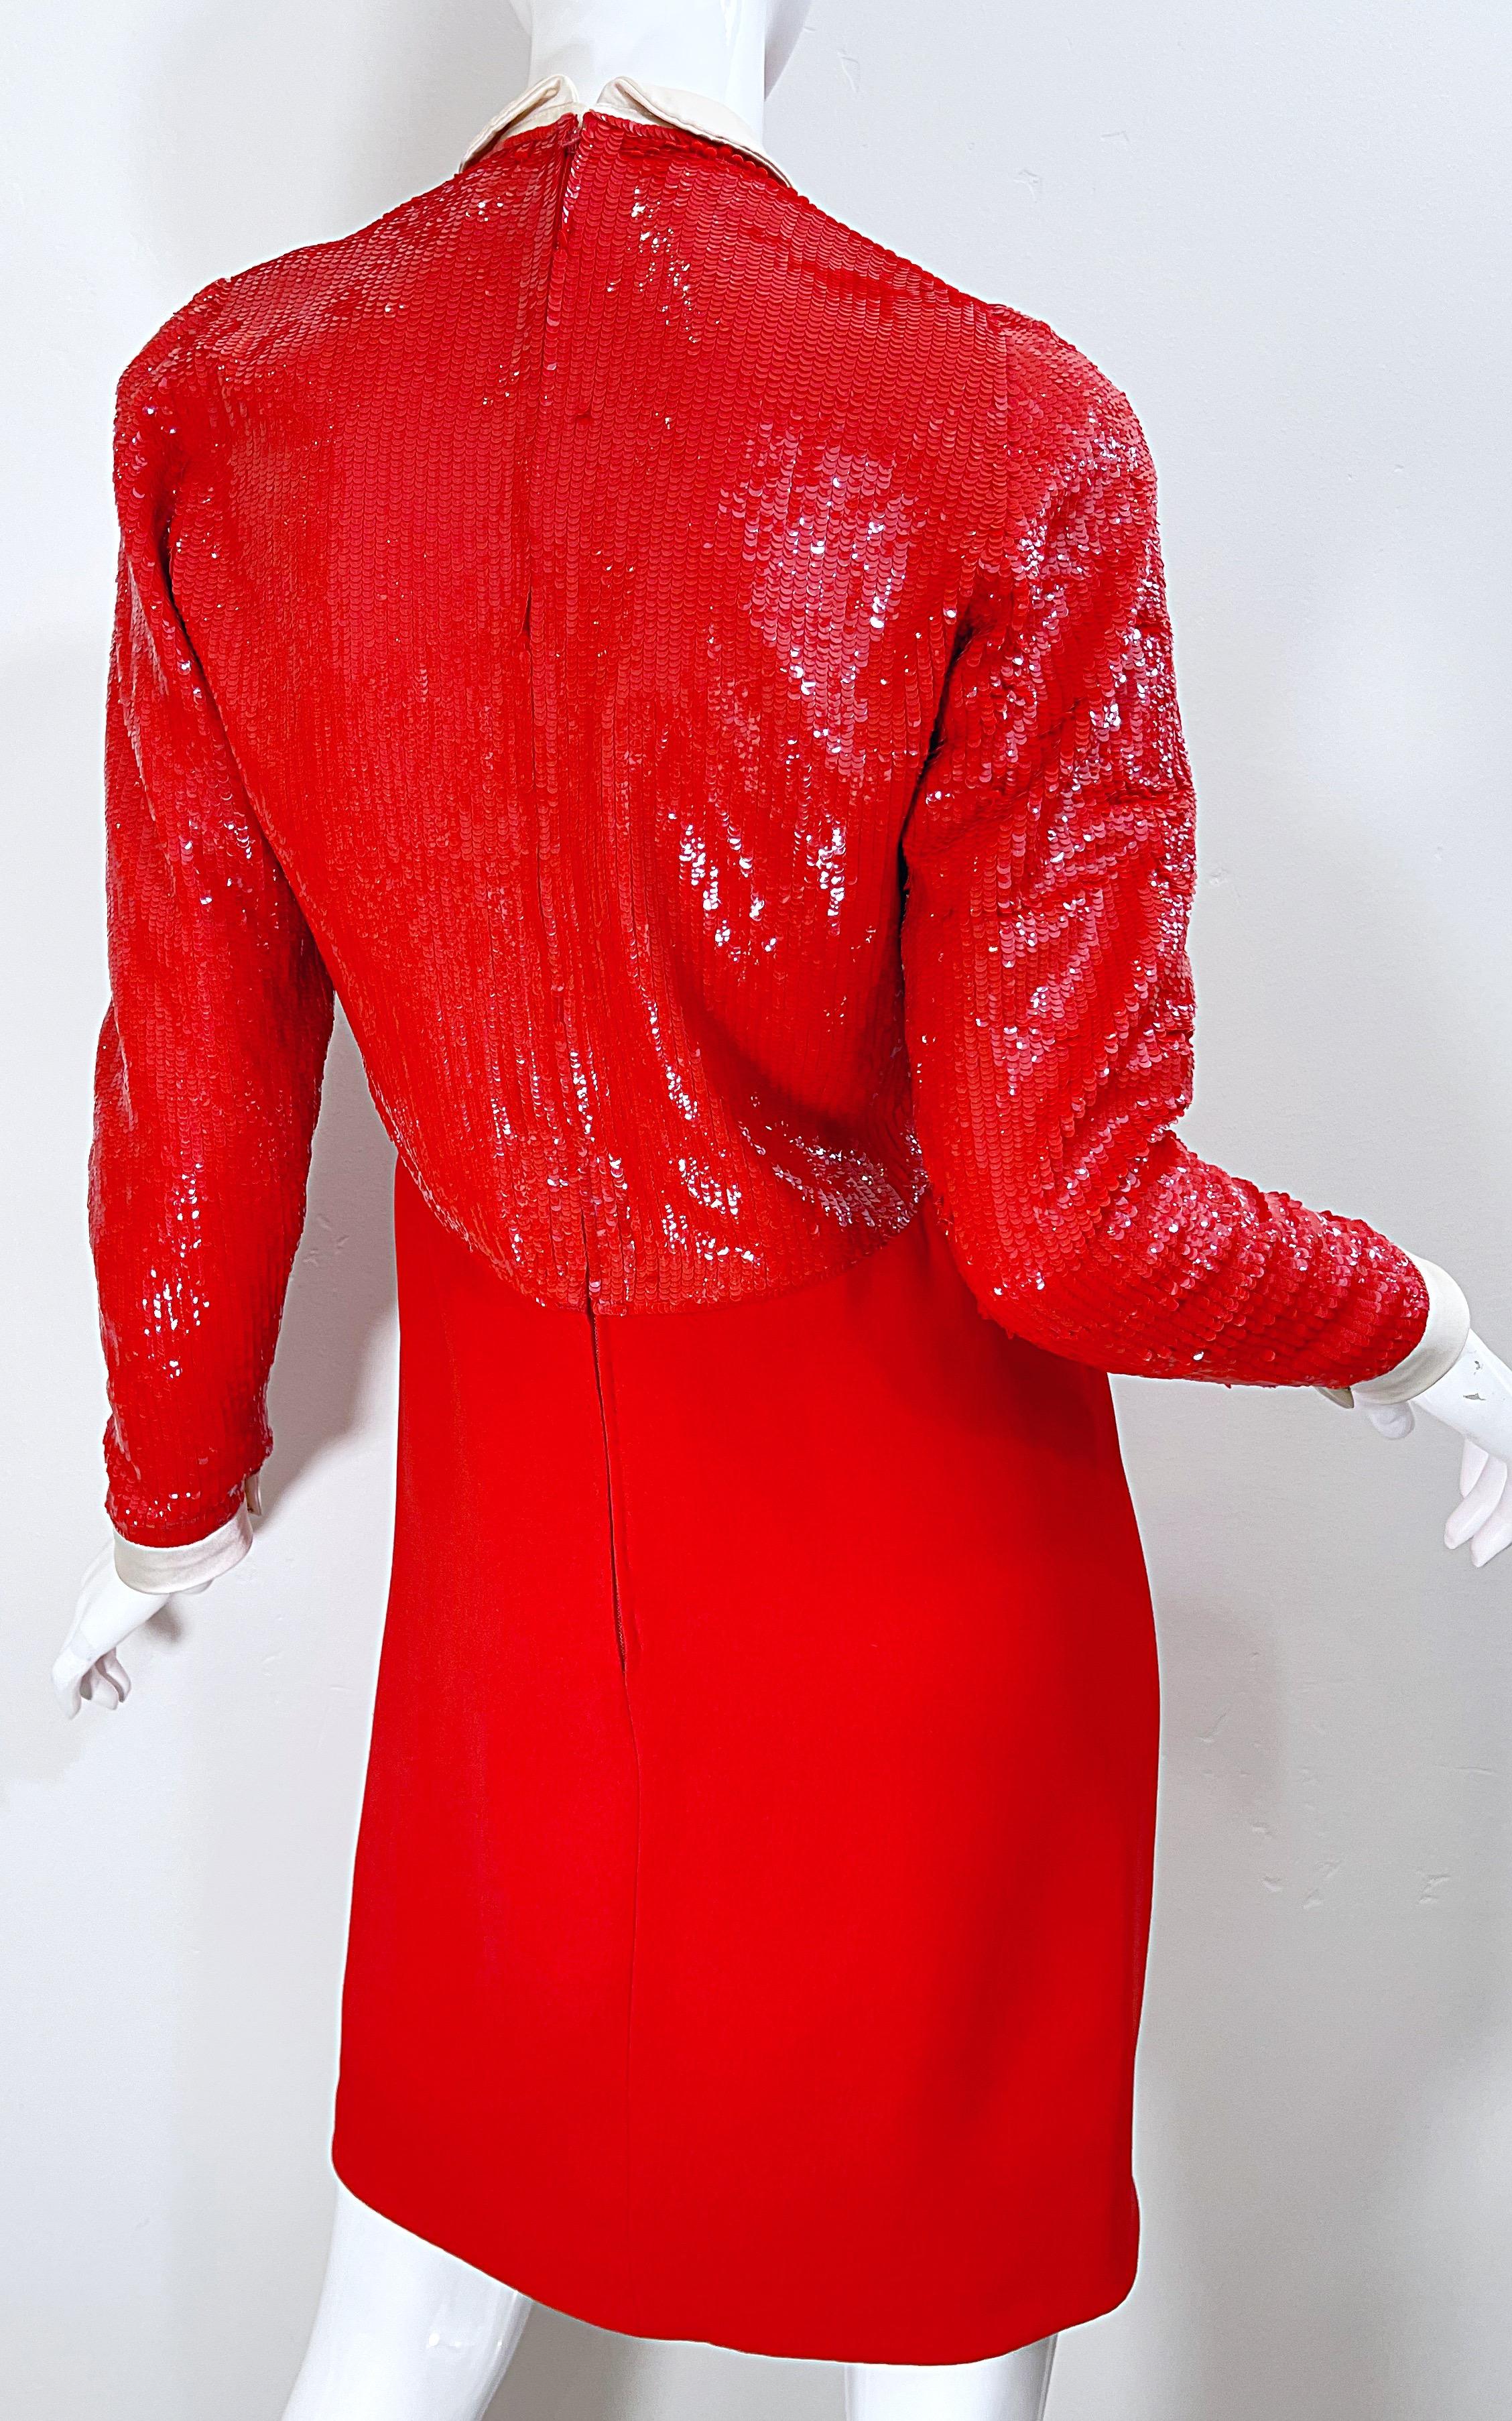 Women's Geoffrey Beene 1980s Lipstick Red Faux Bolero Vintage 80s Tuxedo Dress  For Sale